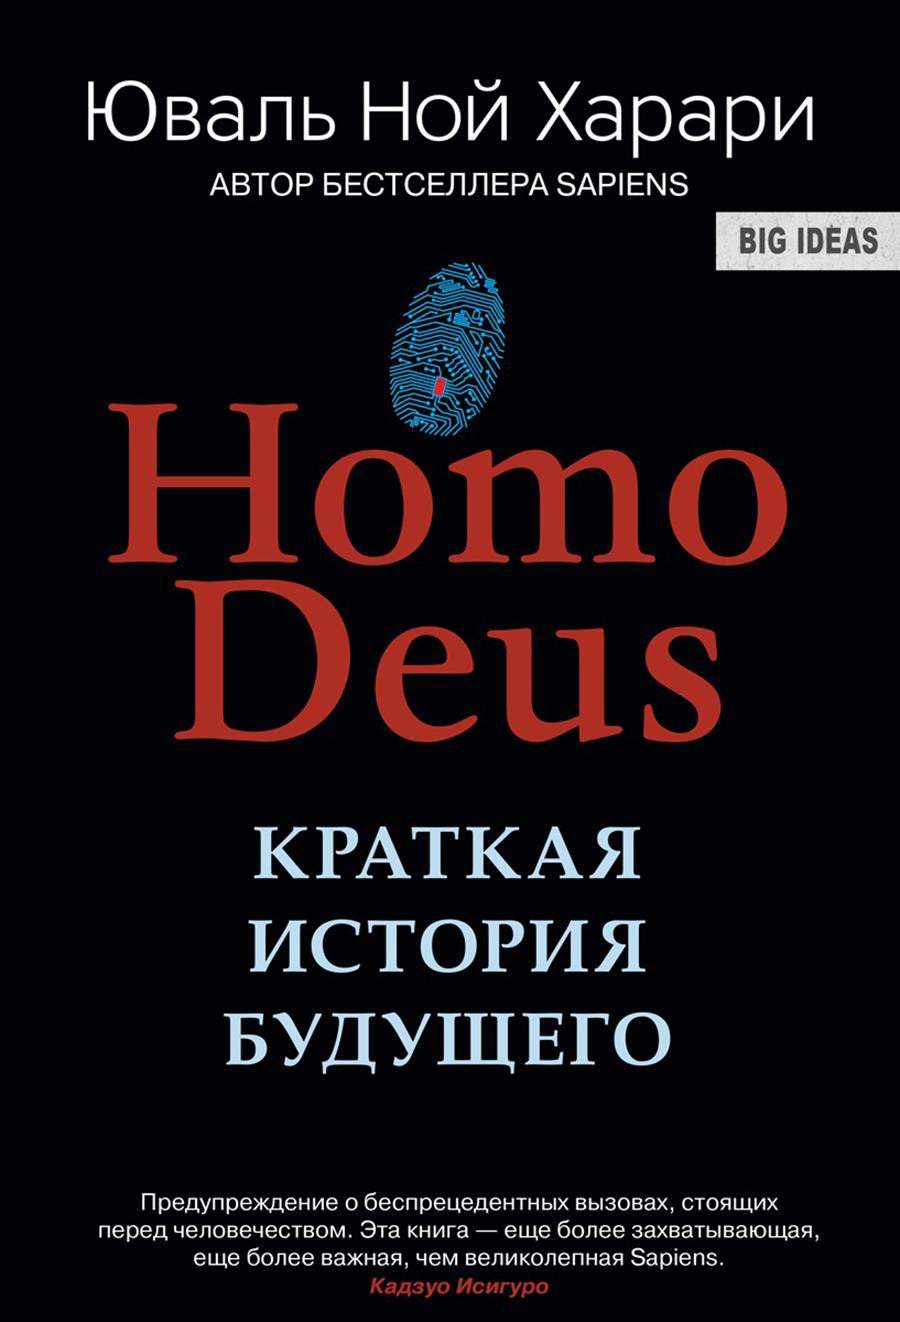 Харари, Ю. Н. Homo Deus. Краткая история будущего